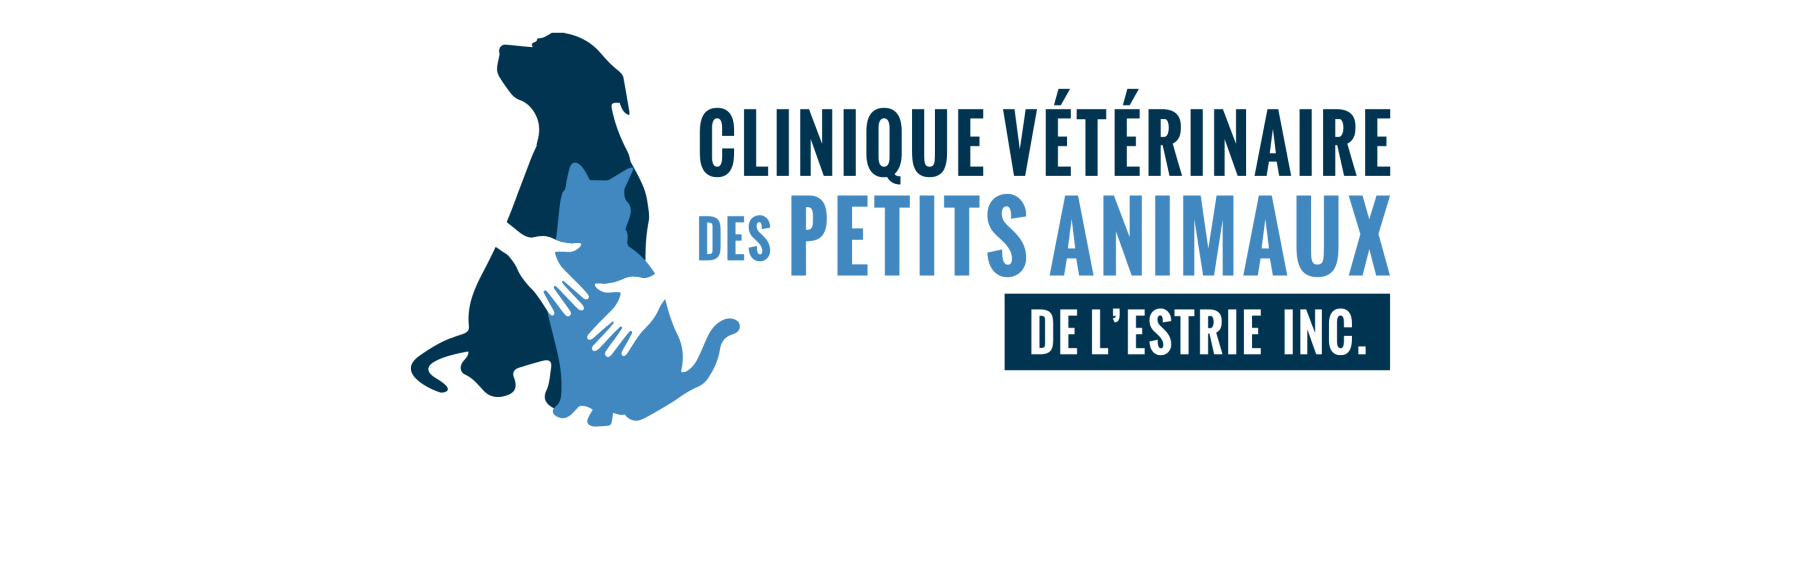 Clinique vétérinaire des petits animaux de l'Estrie - Partenaire de SPA Estrie